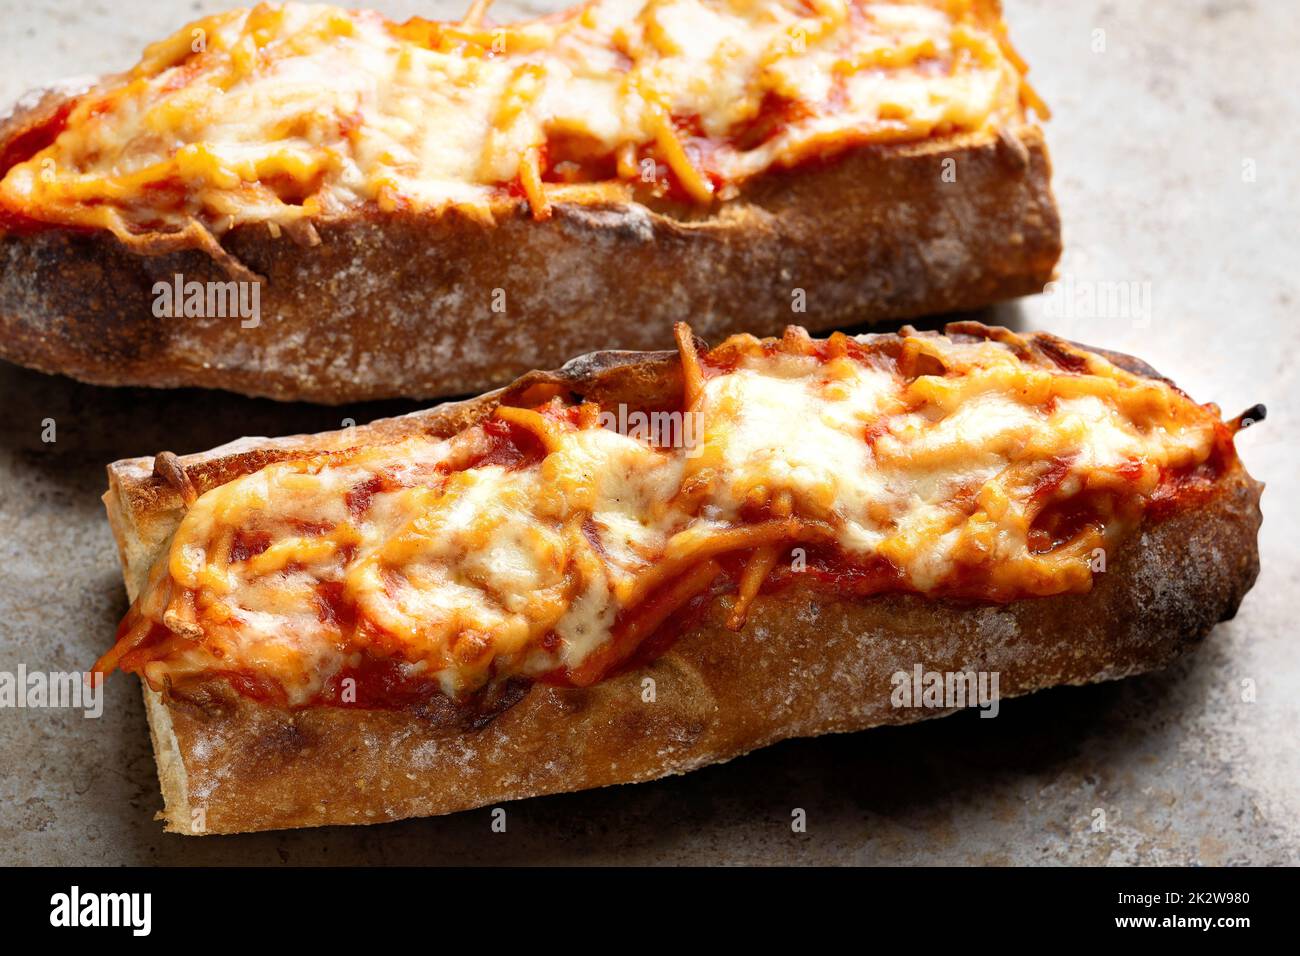 rustic spaghetti in tomato sauce sandwich Stock Photo